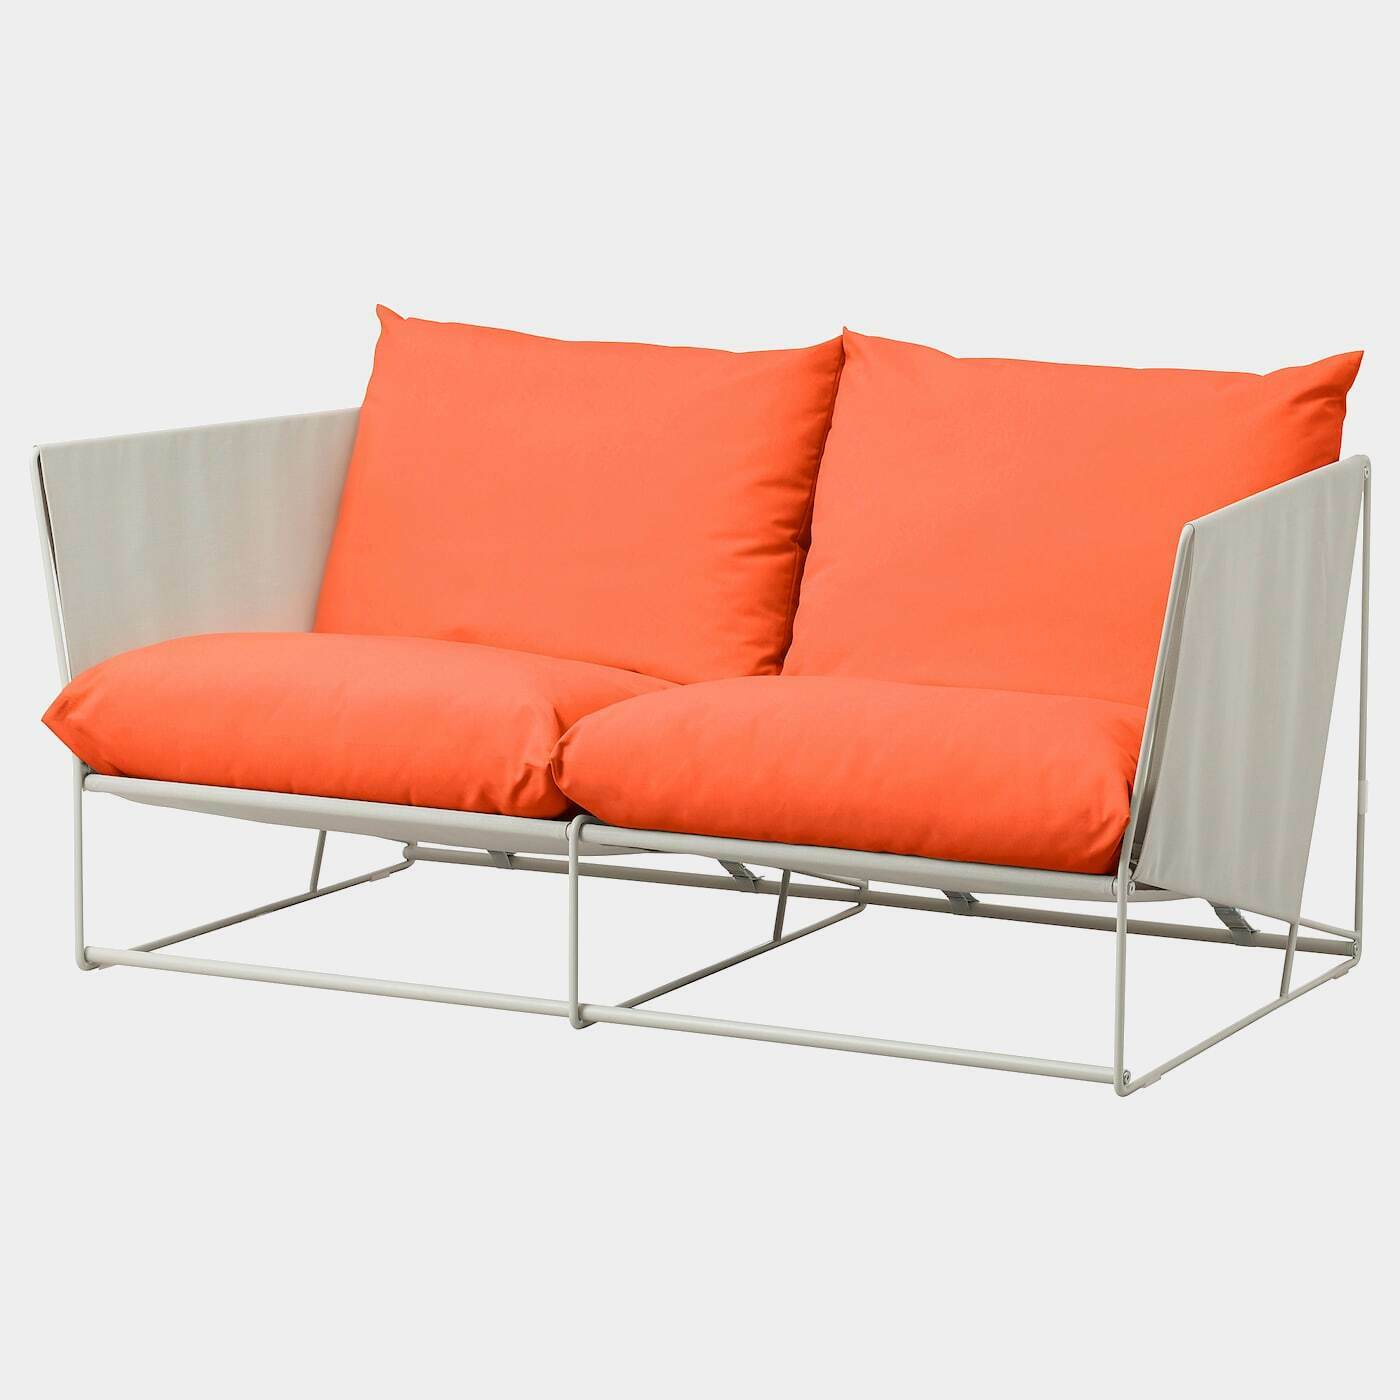 HAVSTEN 2er-Sofa, drinnen/draußen  - Sofas & Polstergruppen - Möbel Ideen für dein Zuhause von Home Trends. Möbel Trends von Social Media Influencer für dein Skandi Zuhause.